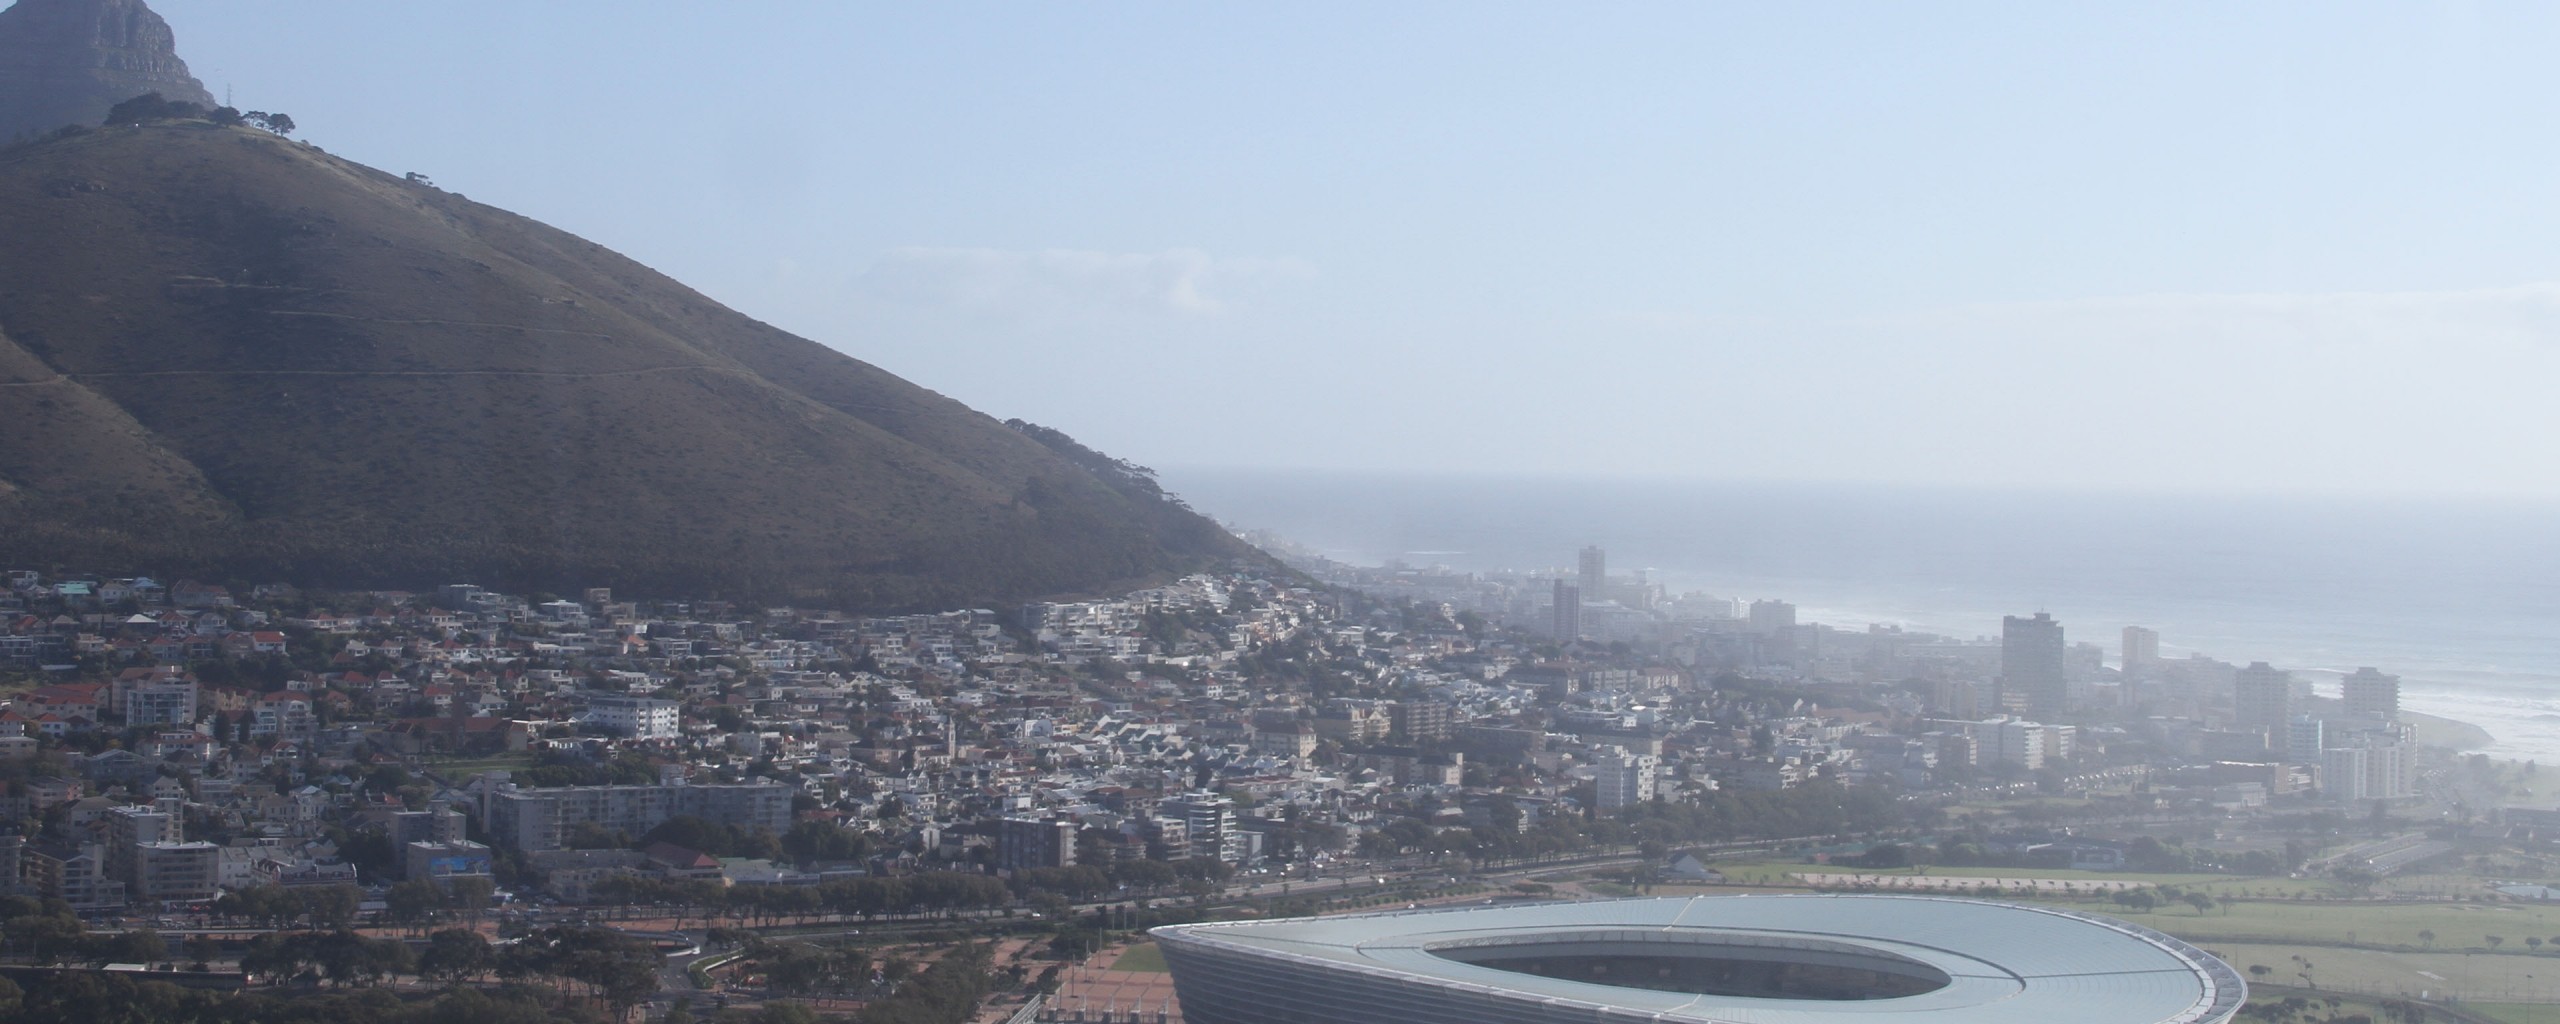 Cape Town Stadium 2560x1024